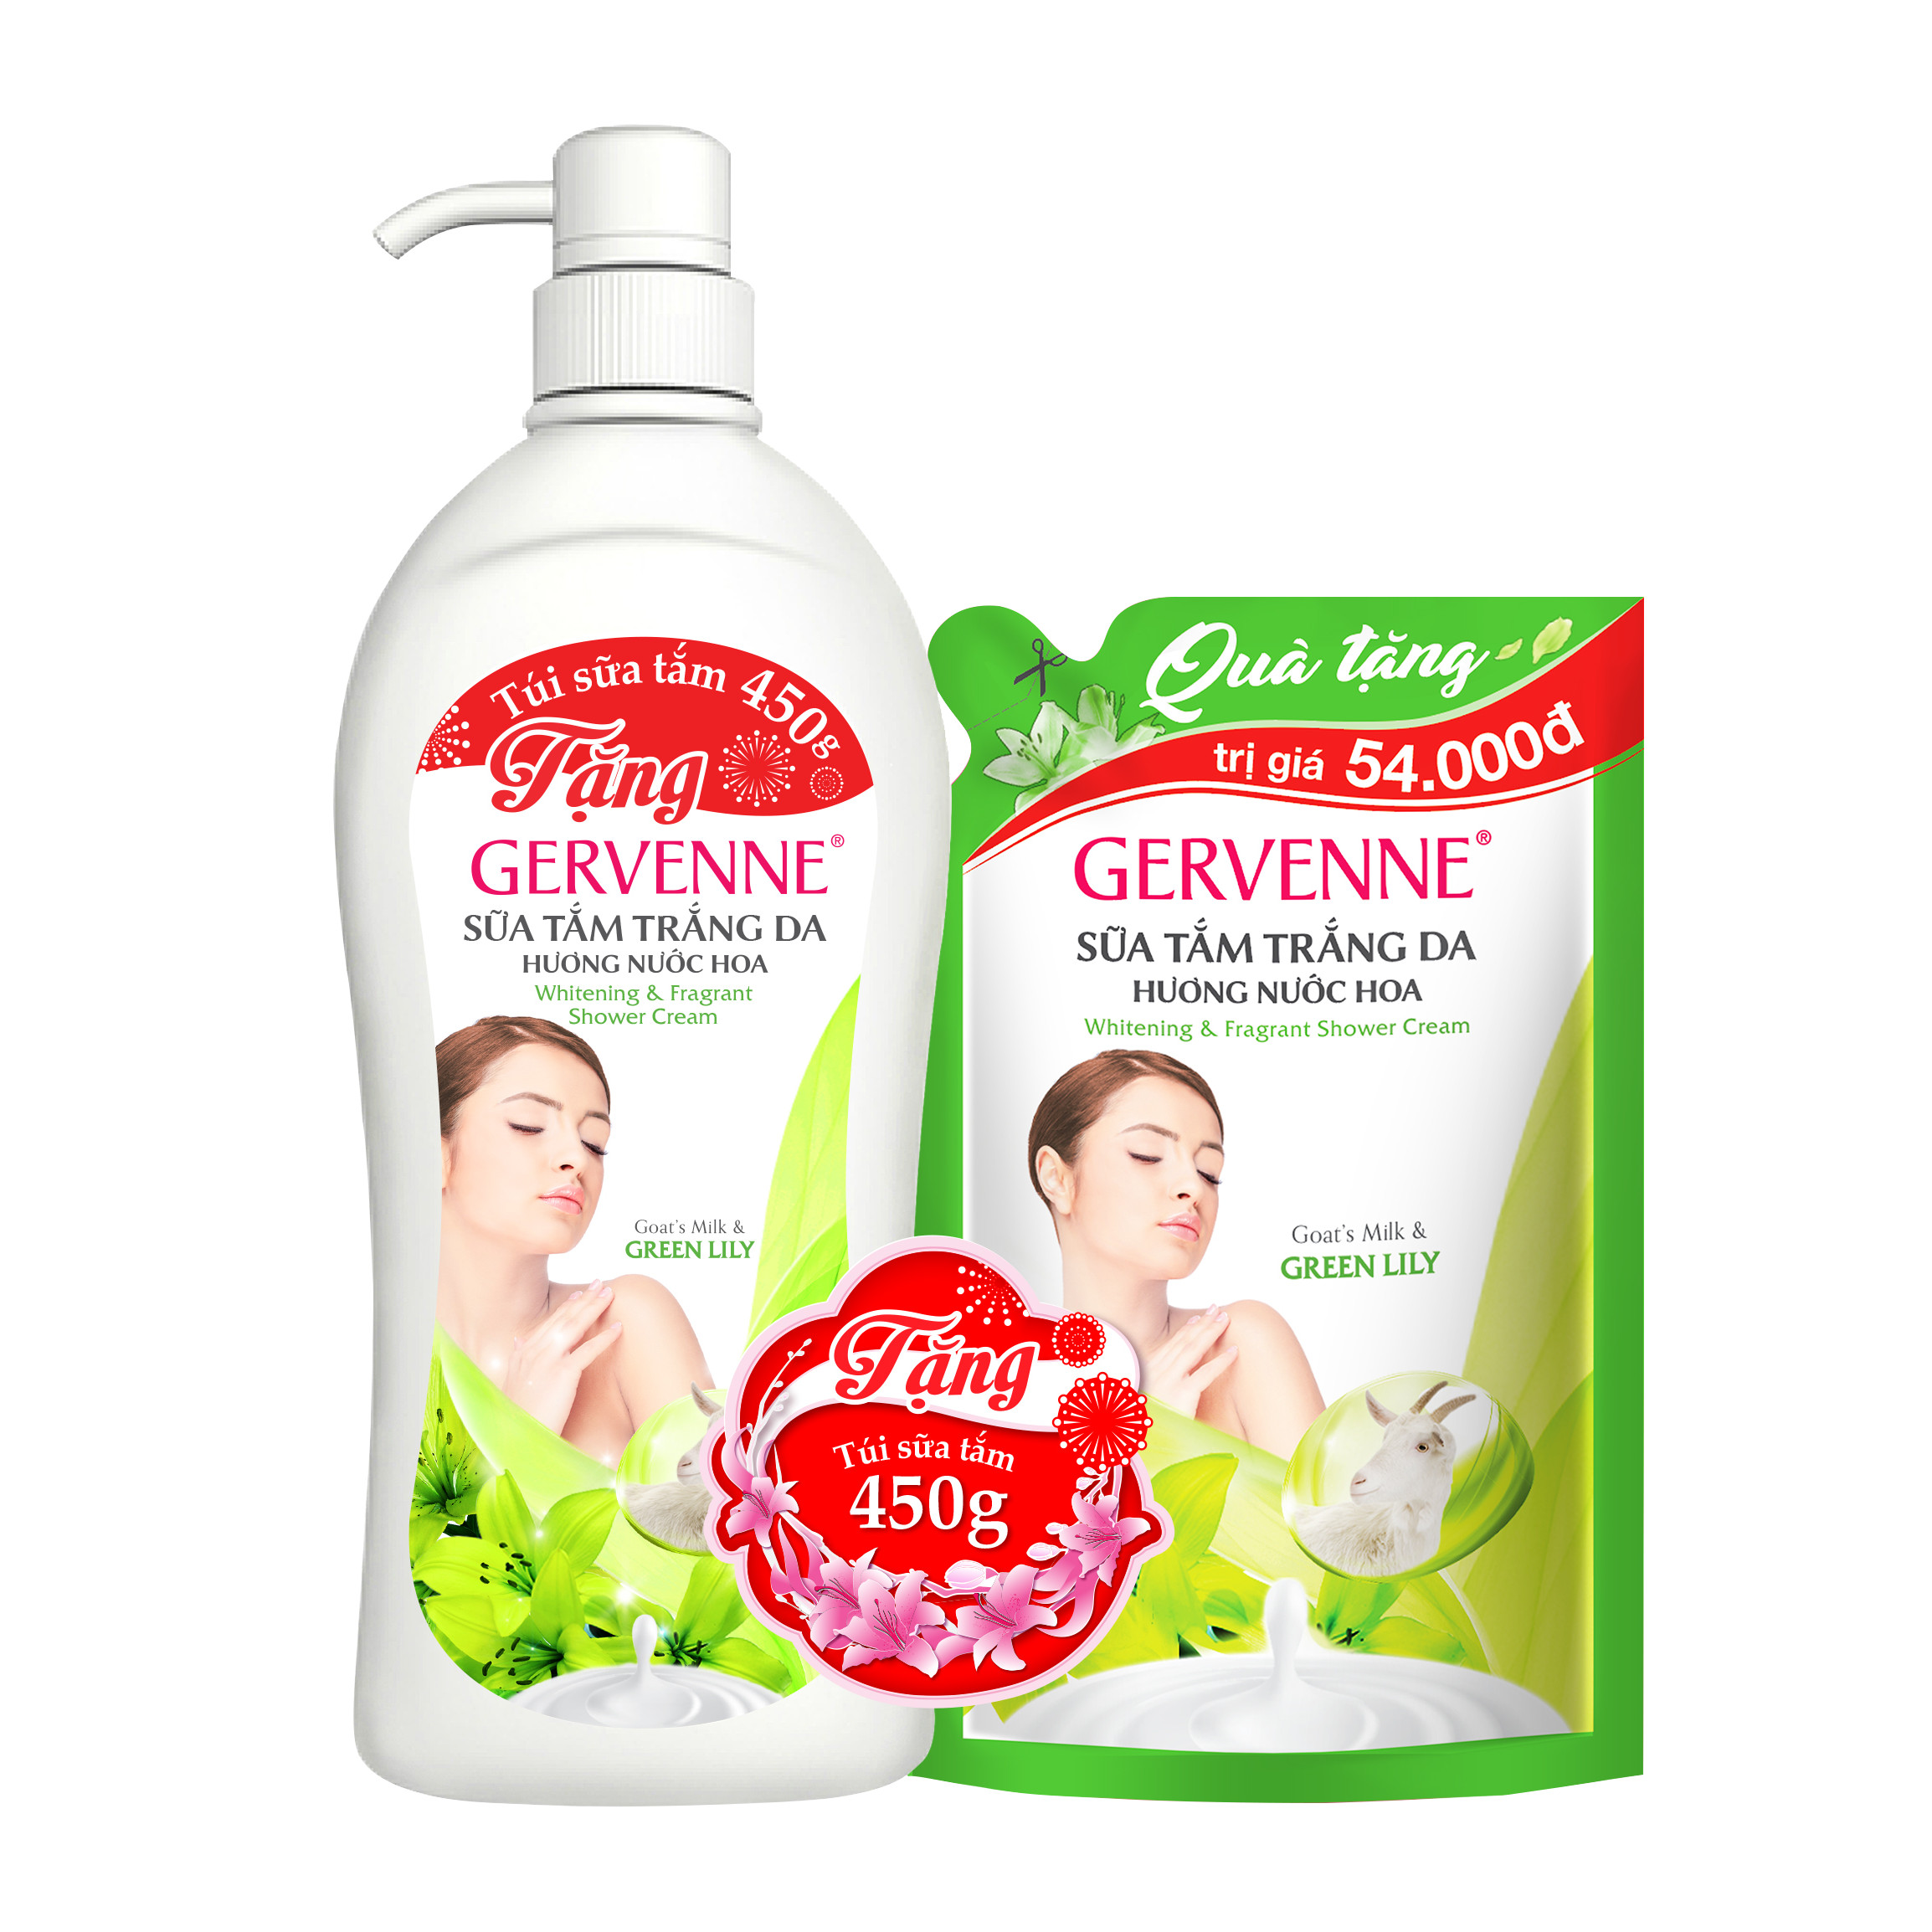 Gervenne Sữa tắm trắng da Green Lily 1.2L - TẶNG túi sữa tắm 450gr